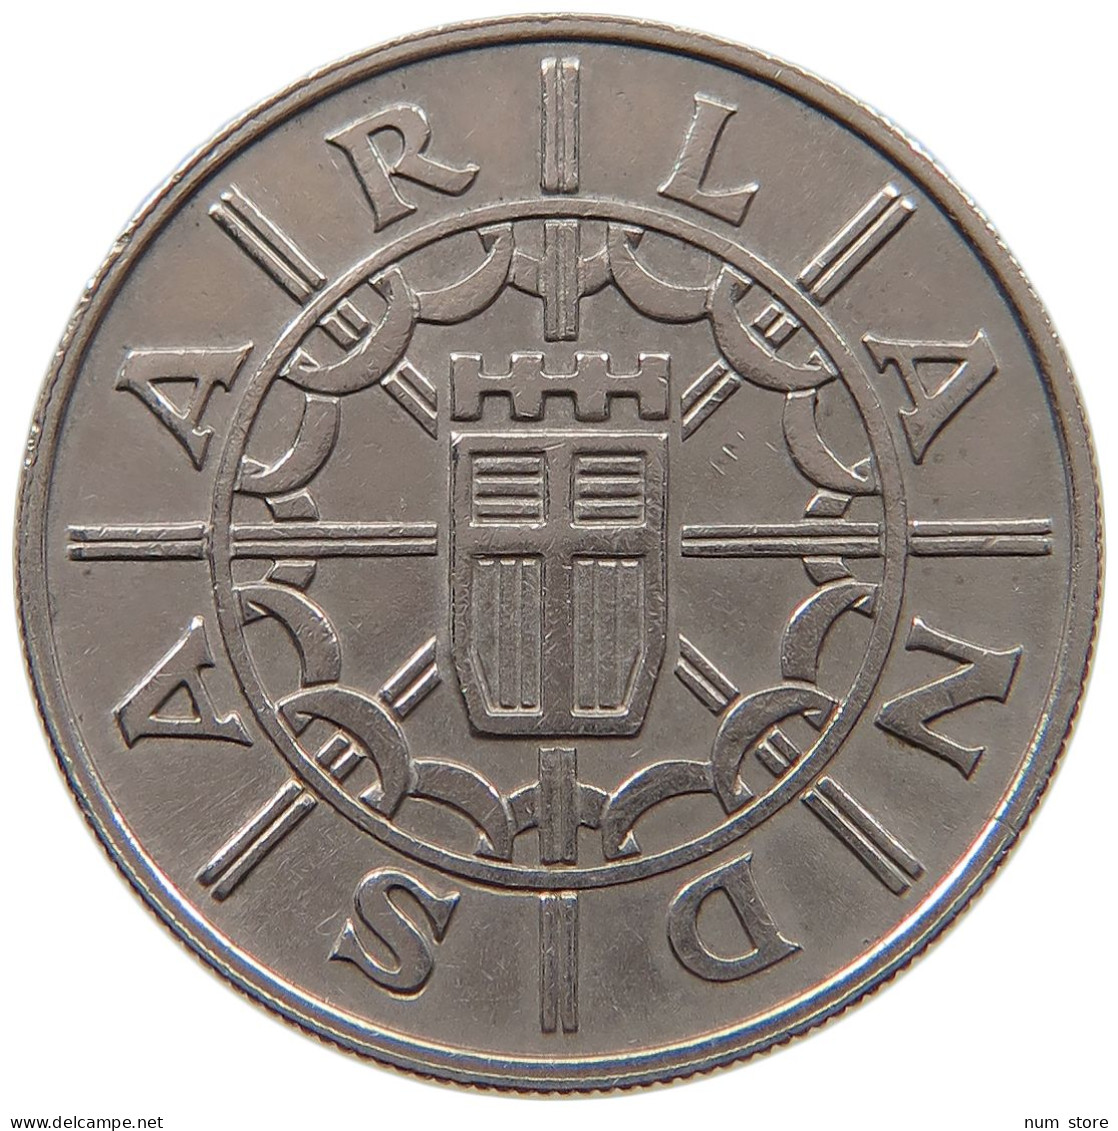 SAARLAND 100 FRANKEN 1955  #a045 1131 - 100 Francos